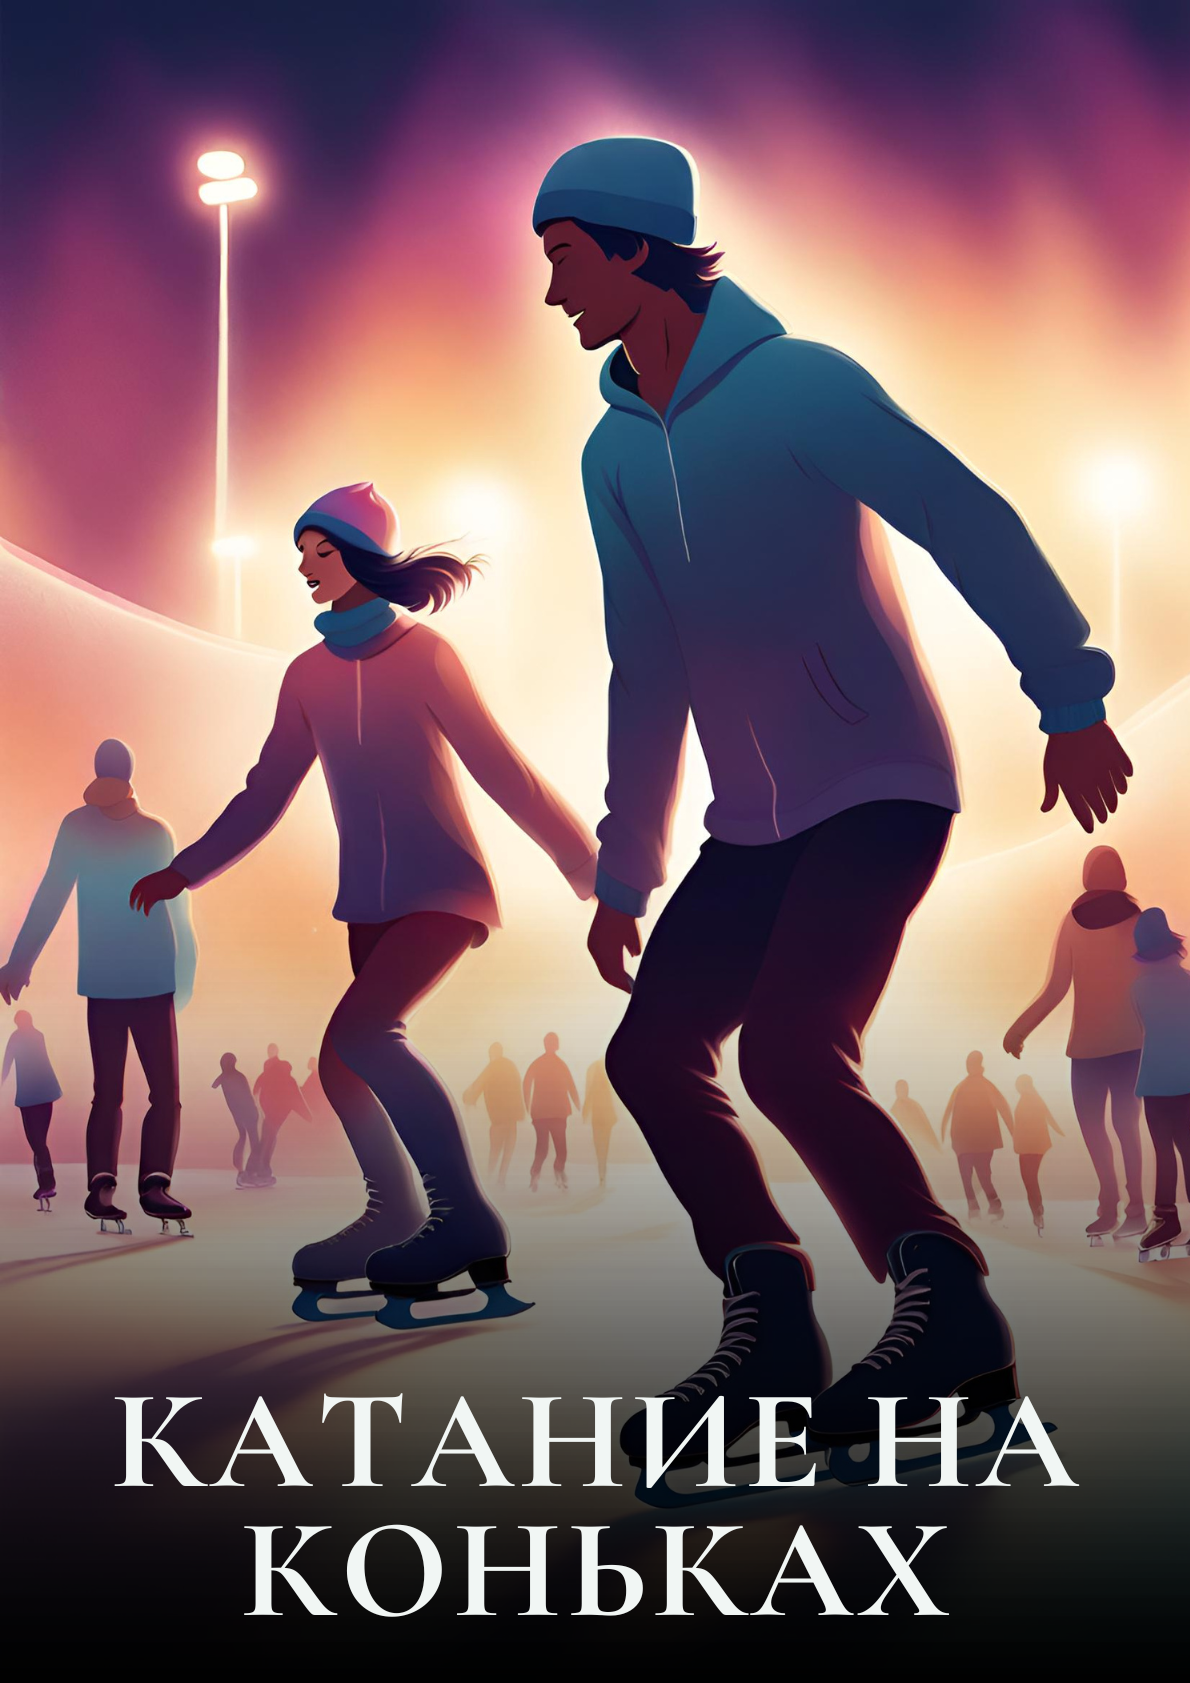 Фото - постер к Активный отдых Катание на коньках на kudapoiti.by